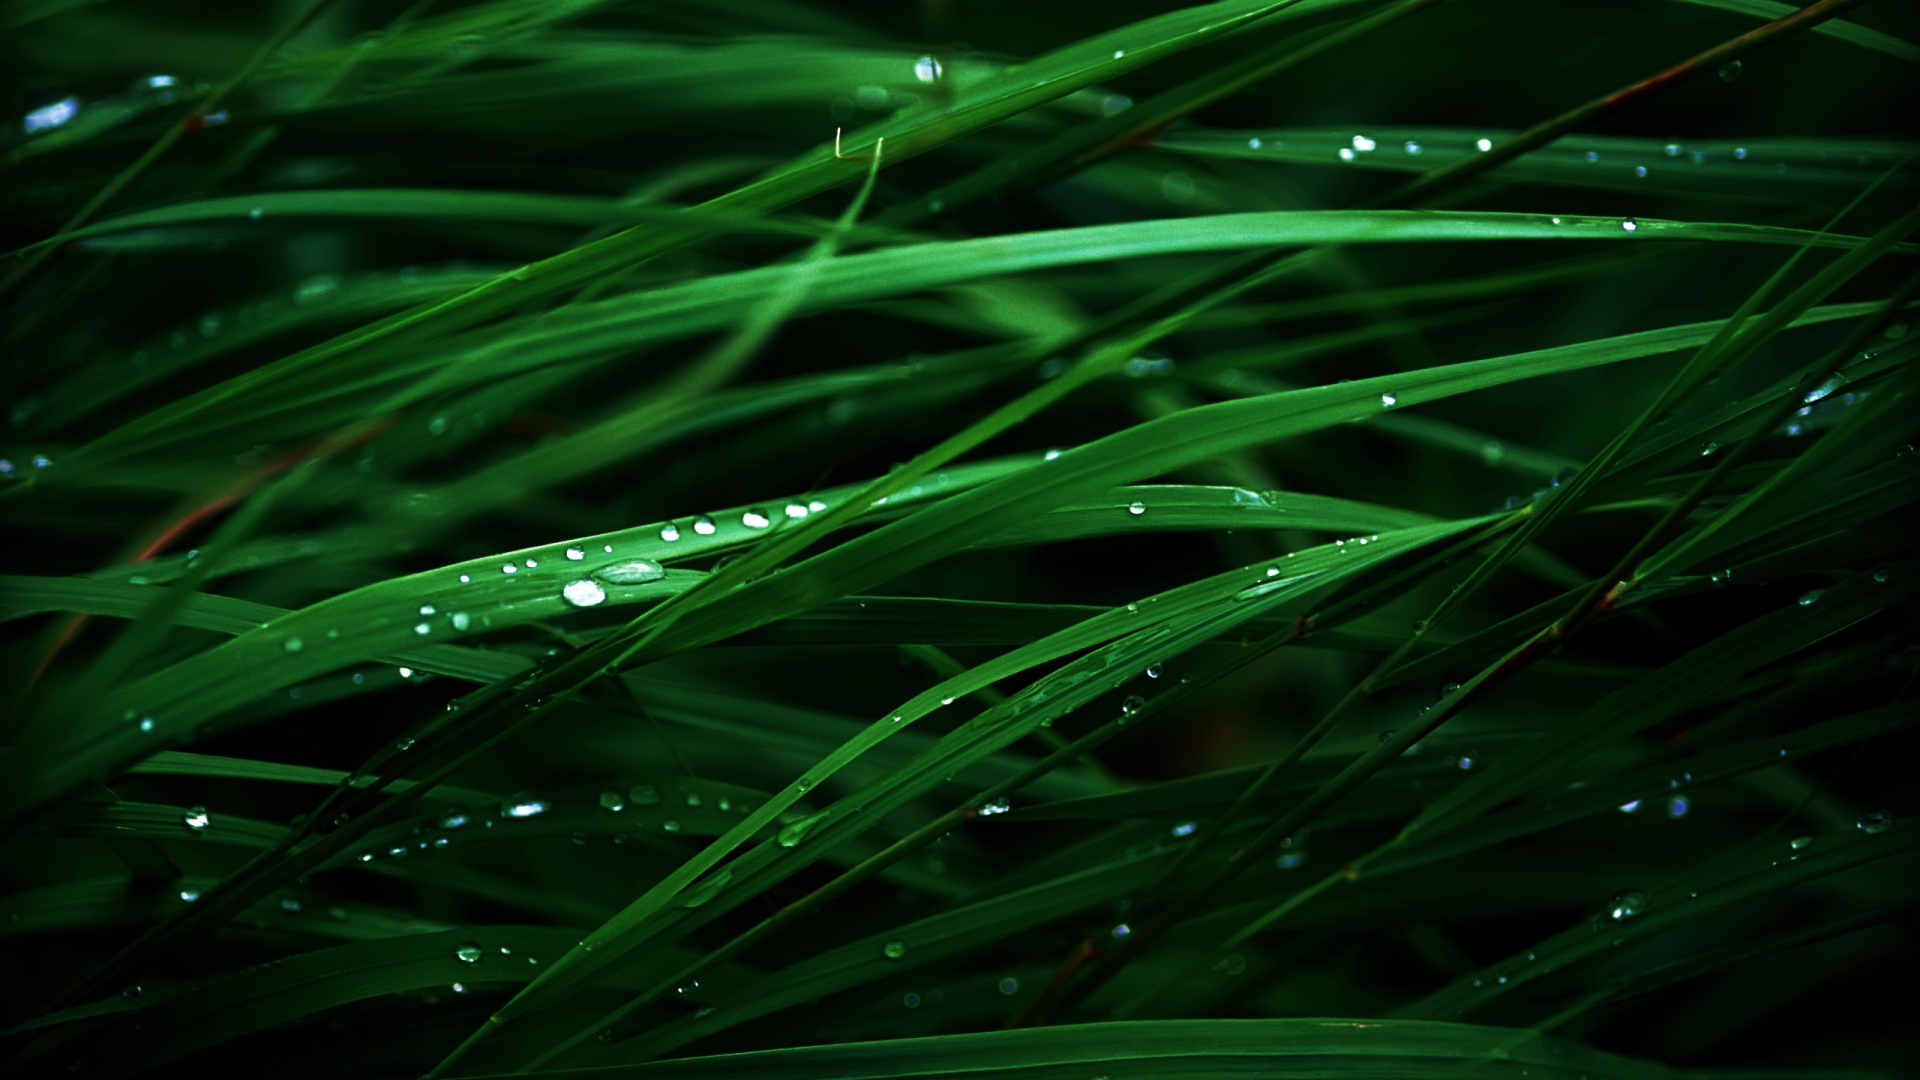 Lush Green Grass - HD Wallpapers